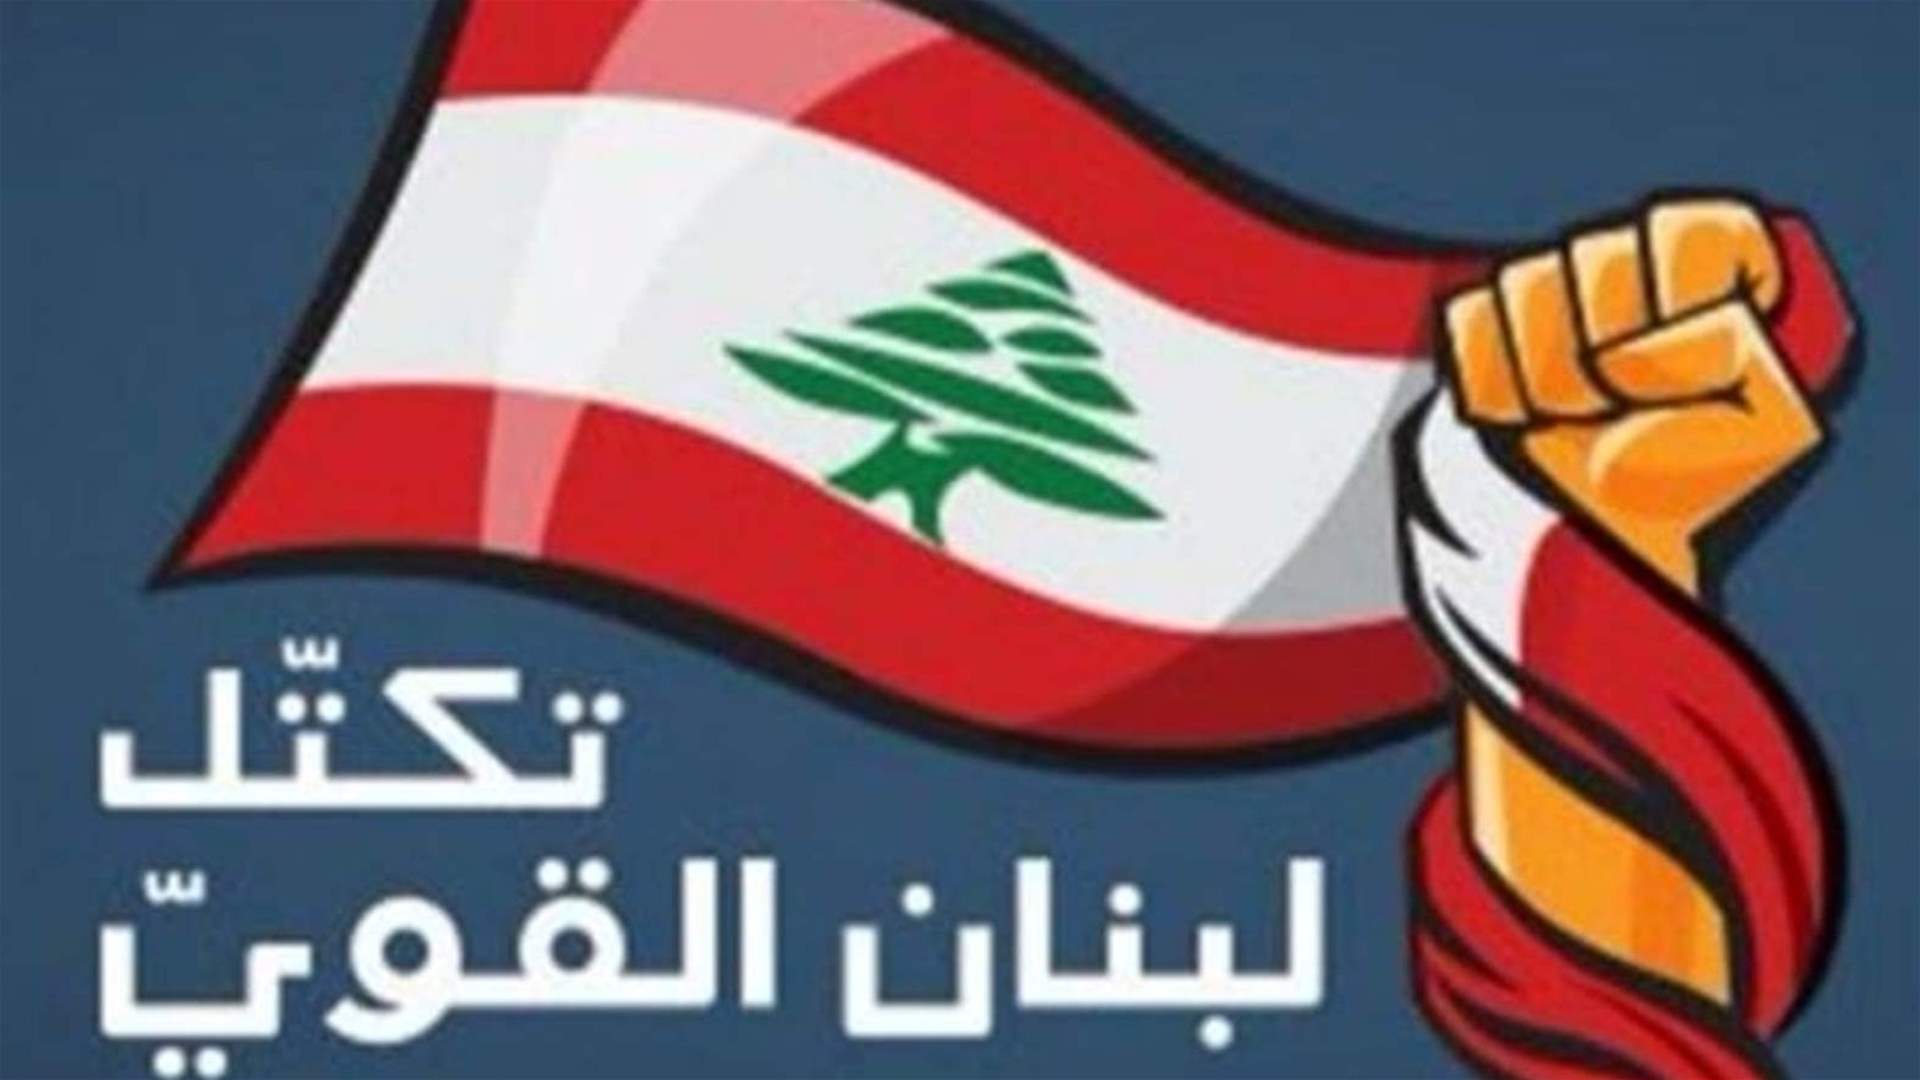 تكتل لبنان القوي لن يشارك في الجلسة التشريعية غدا: جدول الأعمال المطروح لا ينطبق عليه صفة الضرورة القصوى